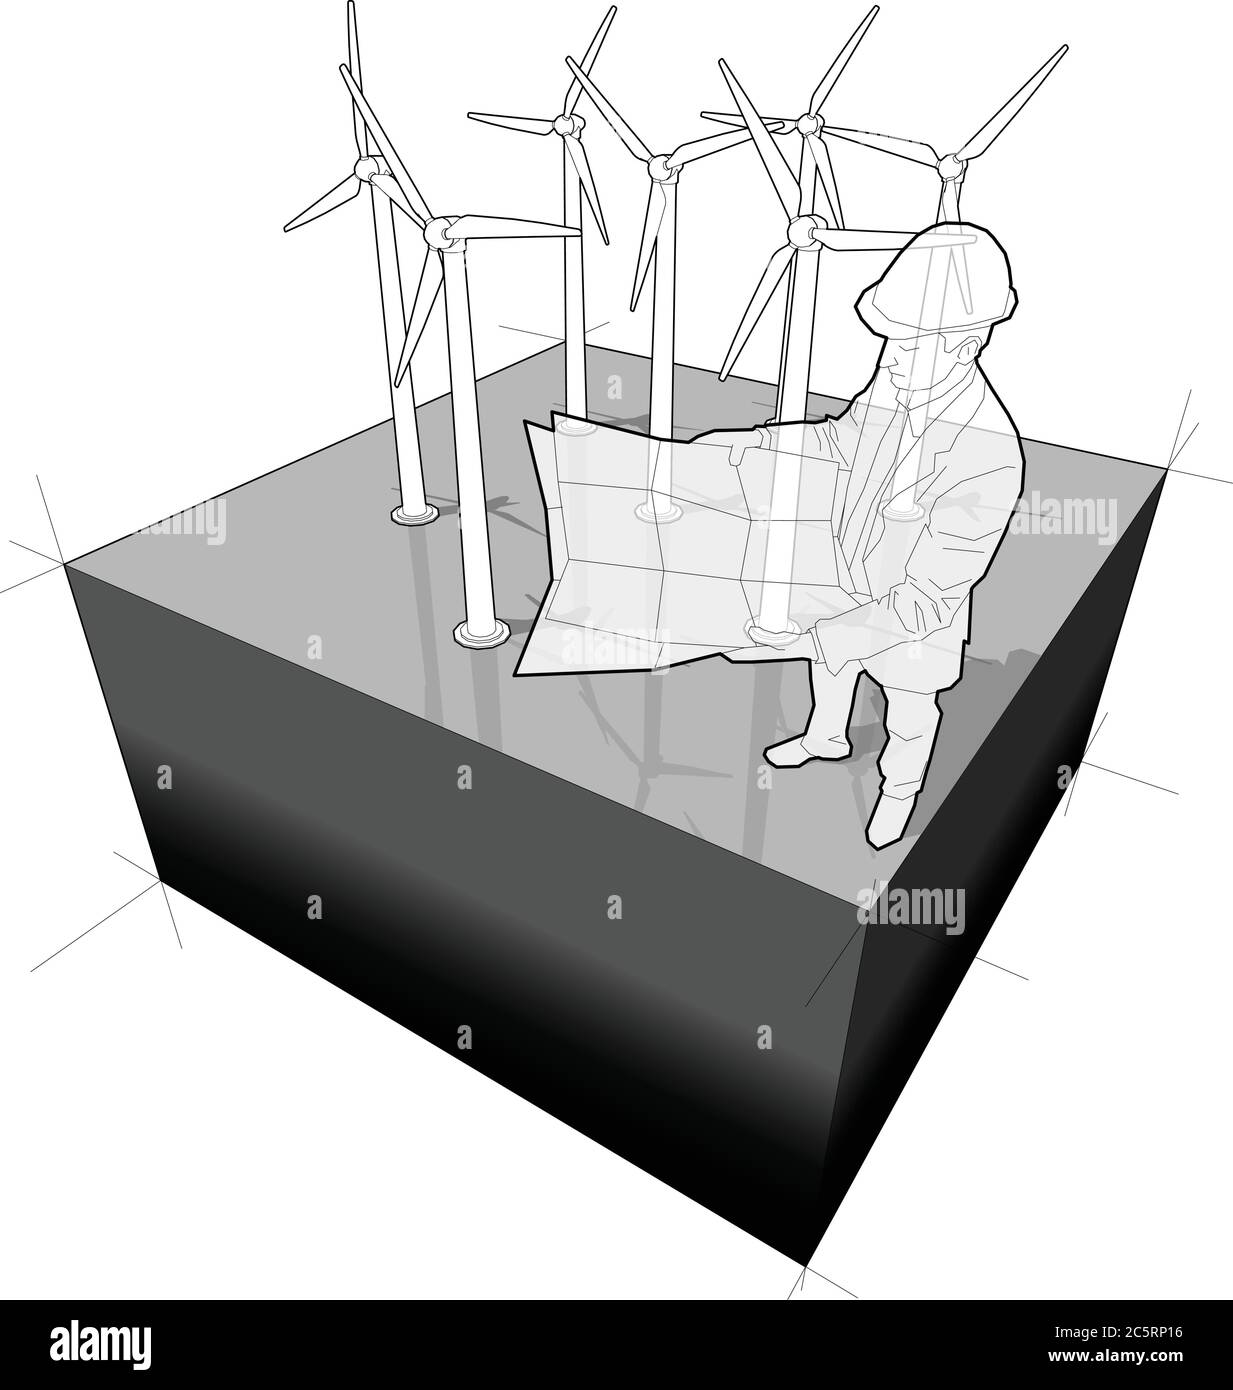 Diagramm eines Windparks mit einem Architekten oder Ingenieur, der einen Planungsplan hält Stock Vektor